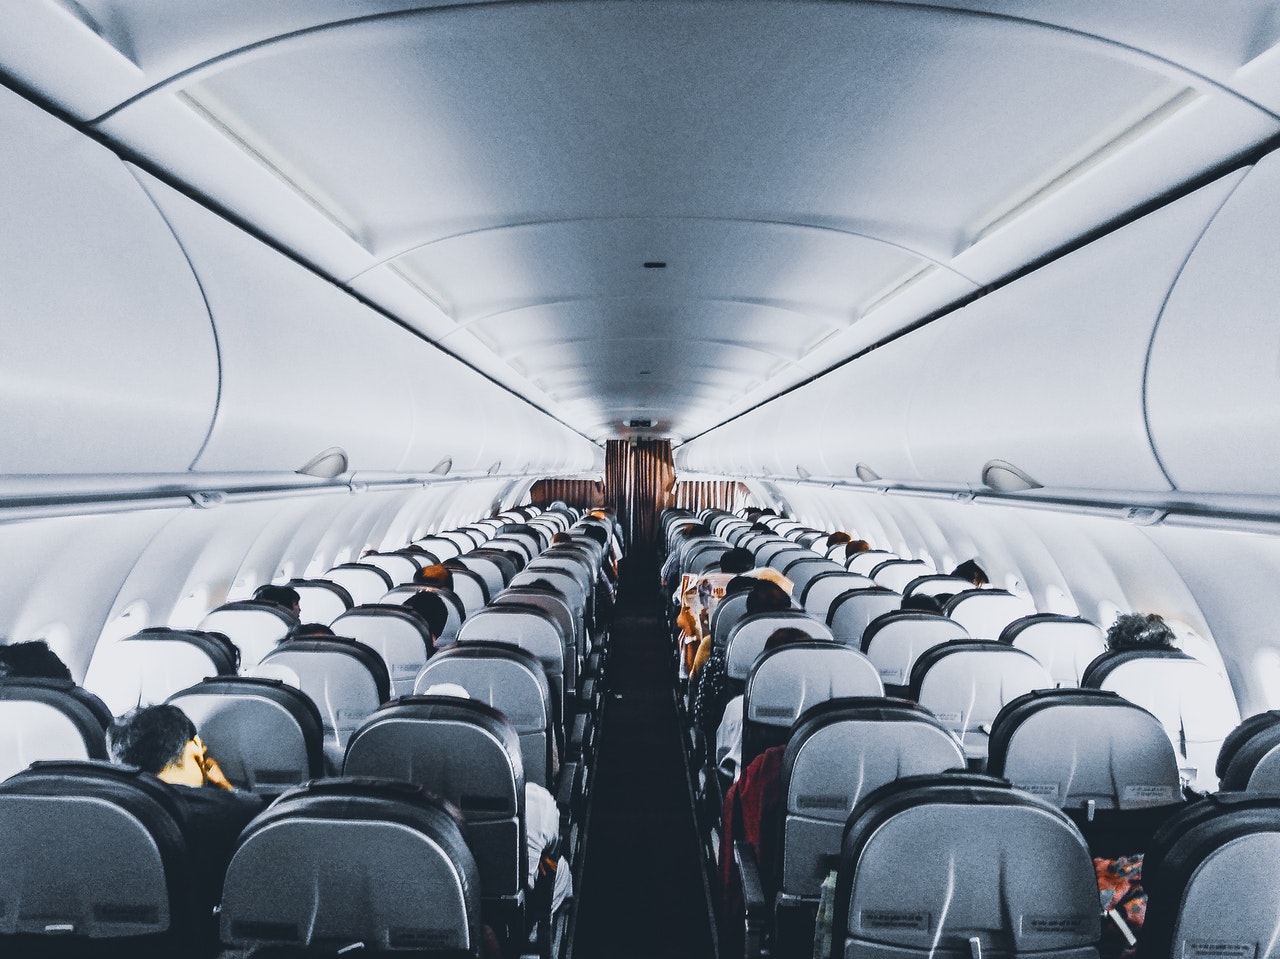 Airplane_passengers_travellersofindia